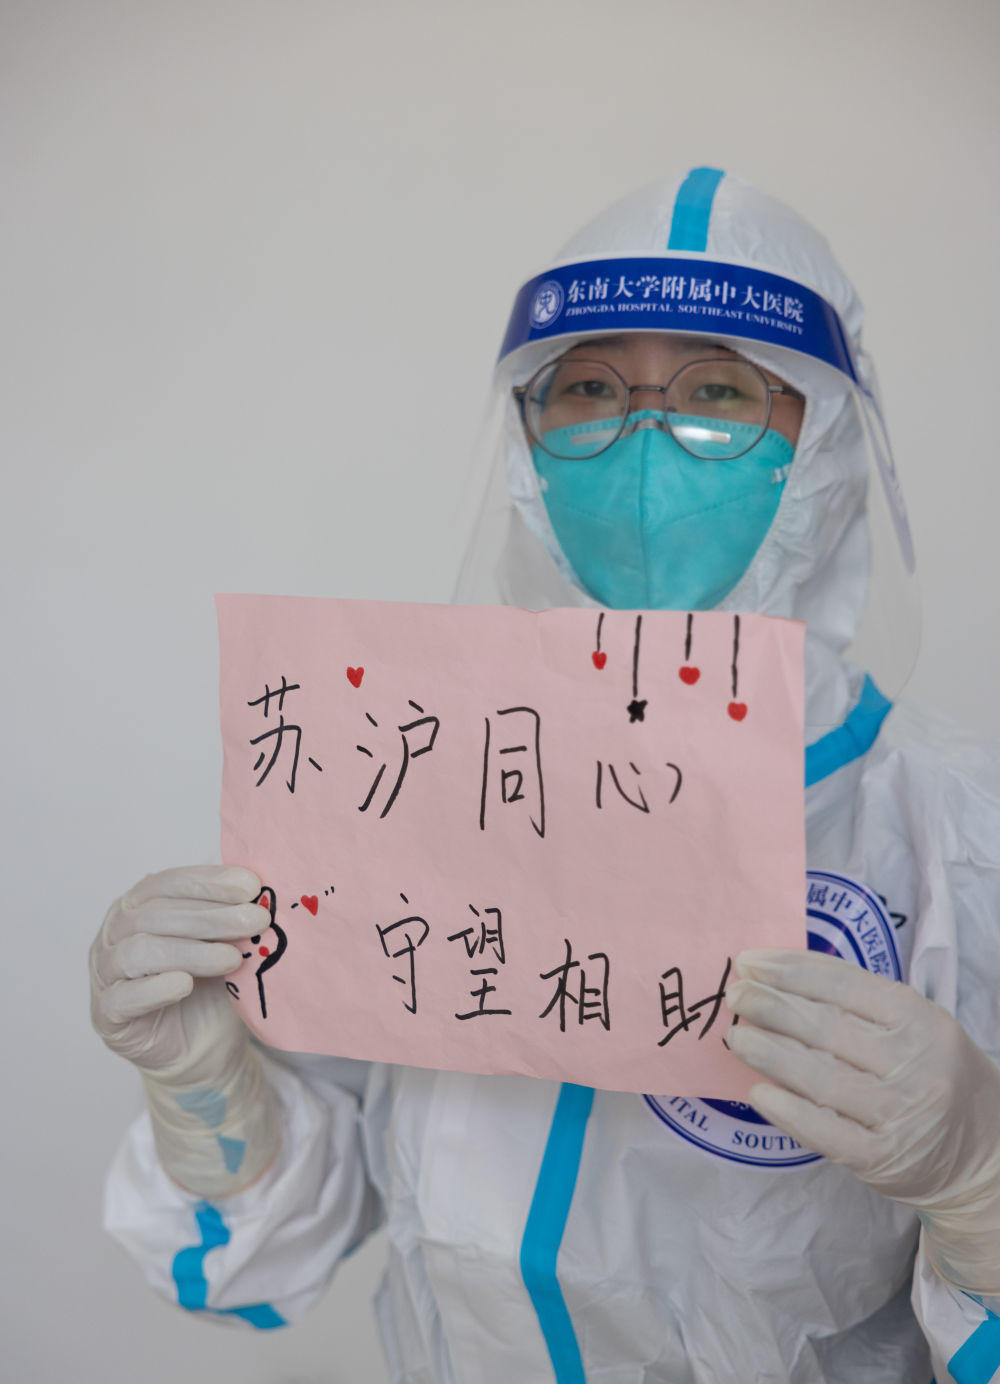 ↑4月6日，在上海临港方舱医院，一名来自江苏的医生展示“苏沪同心 守望相助”的口号。新华社记者 金立旺 摄